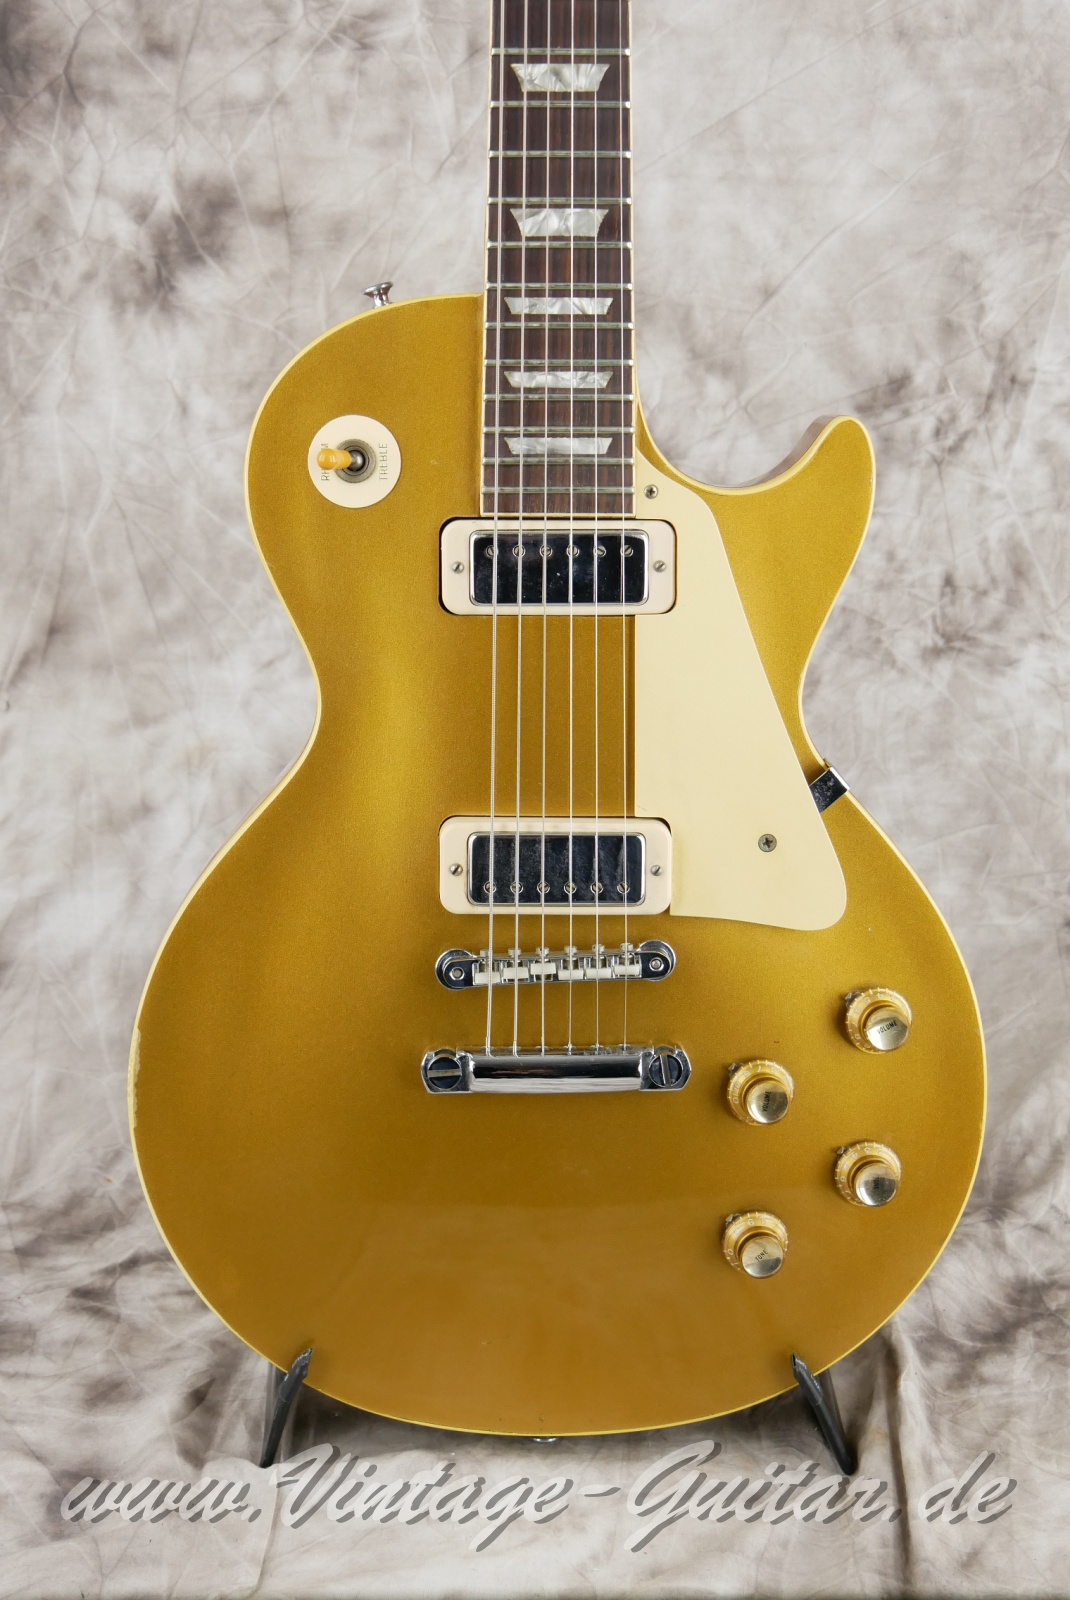 Gibson_Les Paul_Deluxe_Goldtop_1969_1970-007.JPG